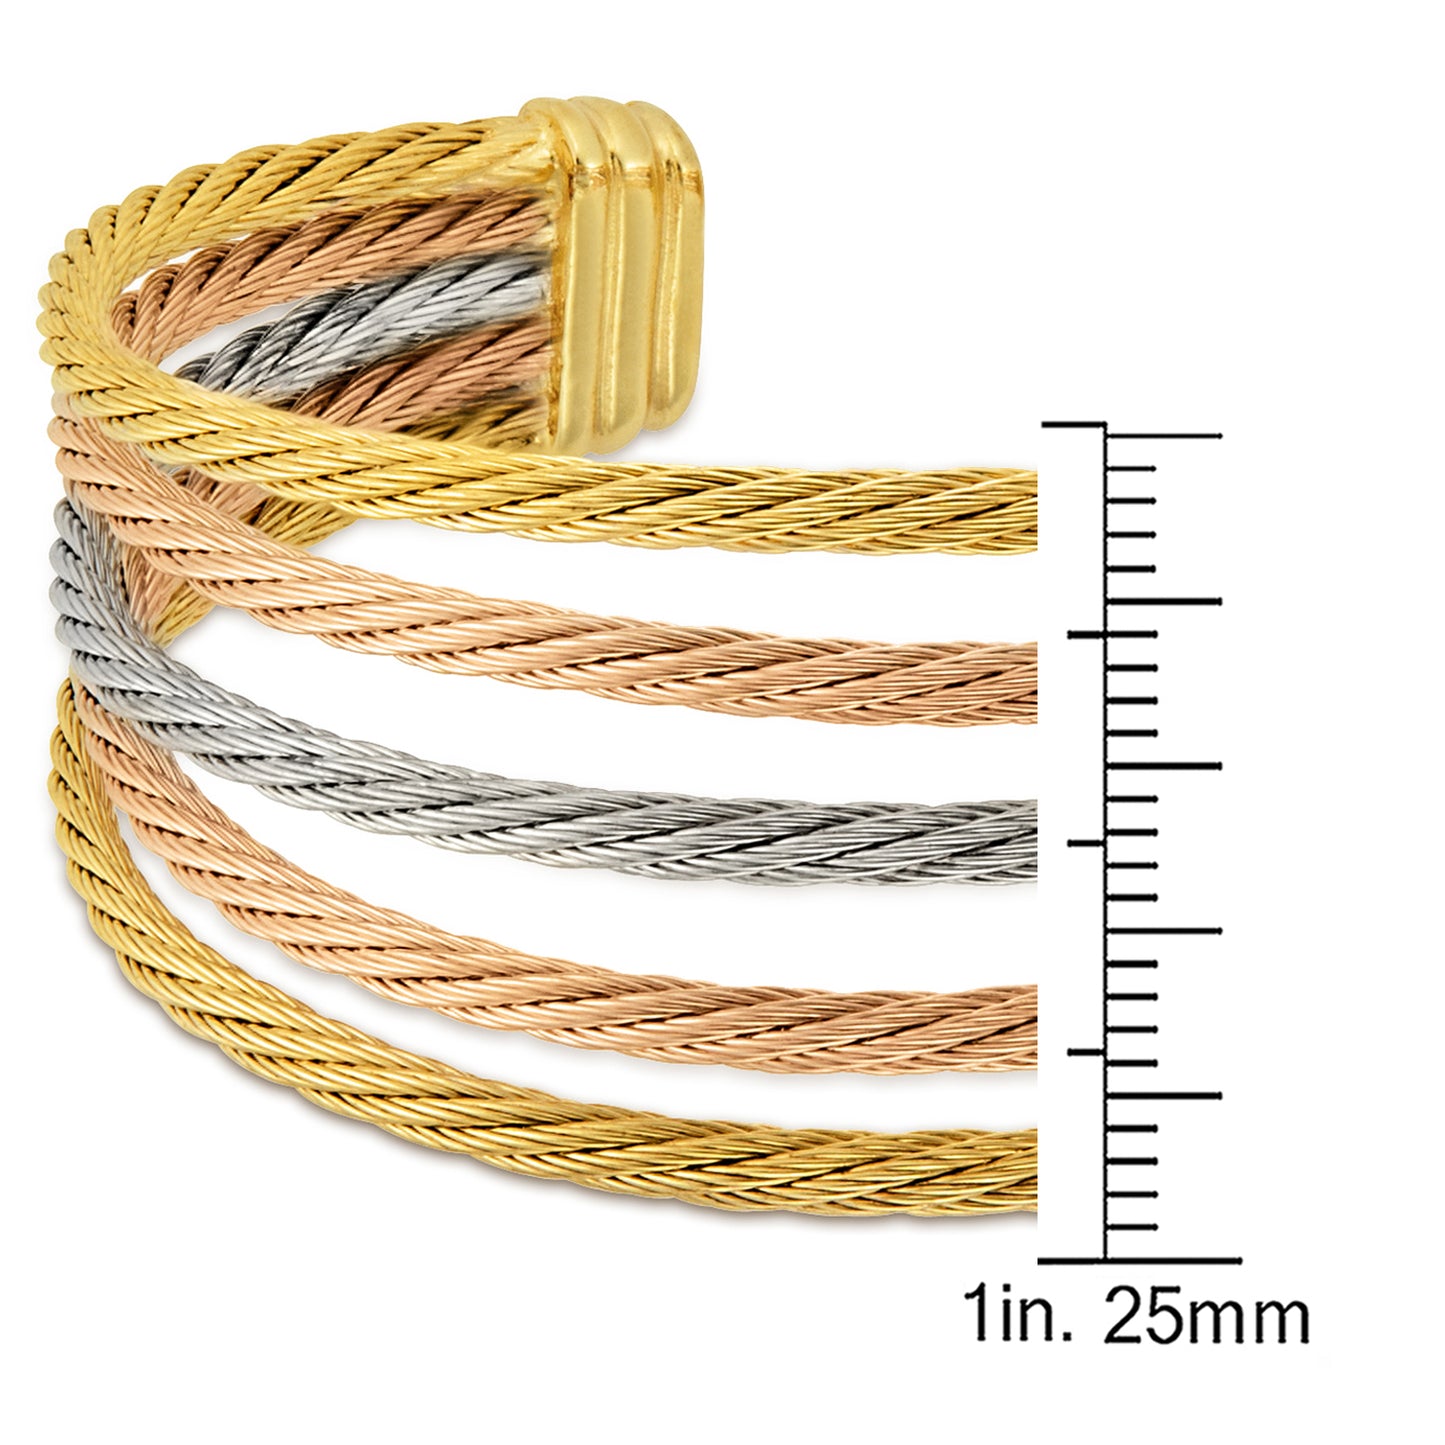 Tri-color Rope Cuff Bracelet